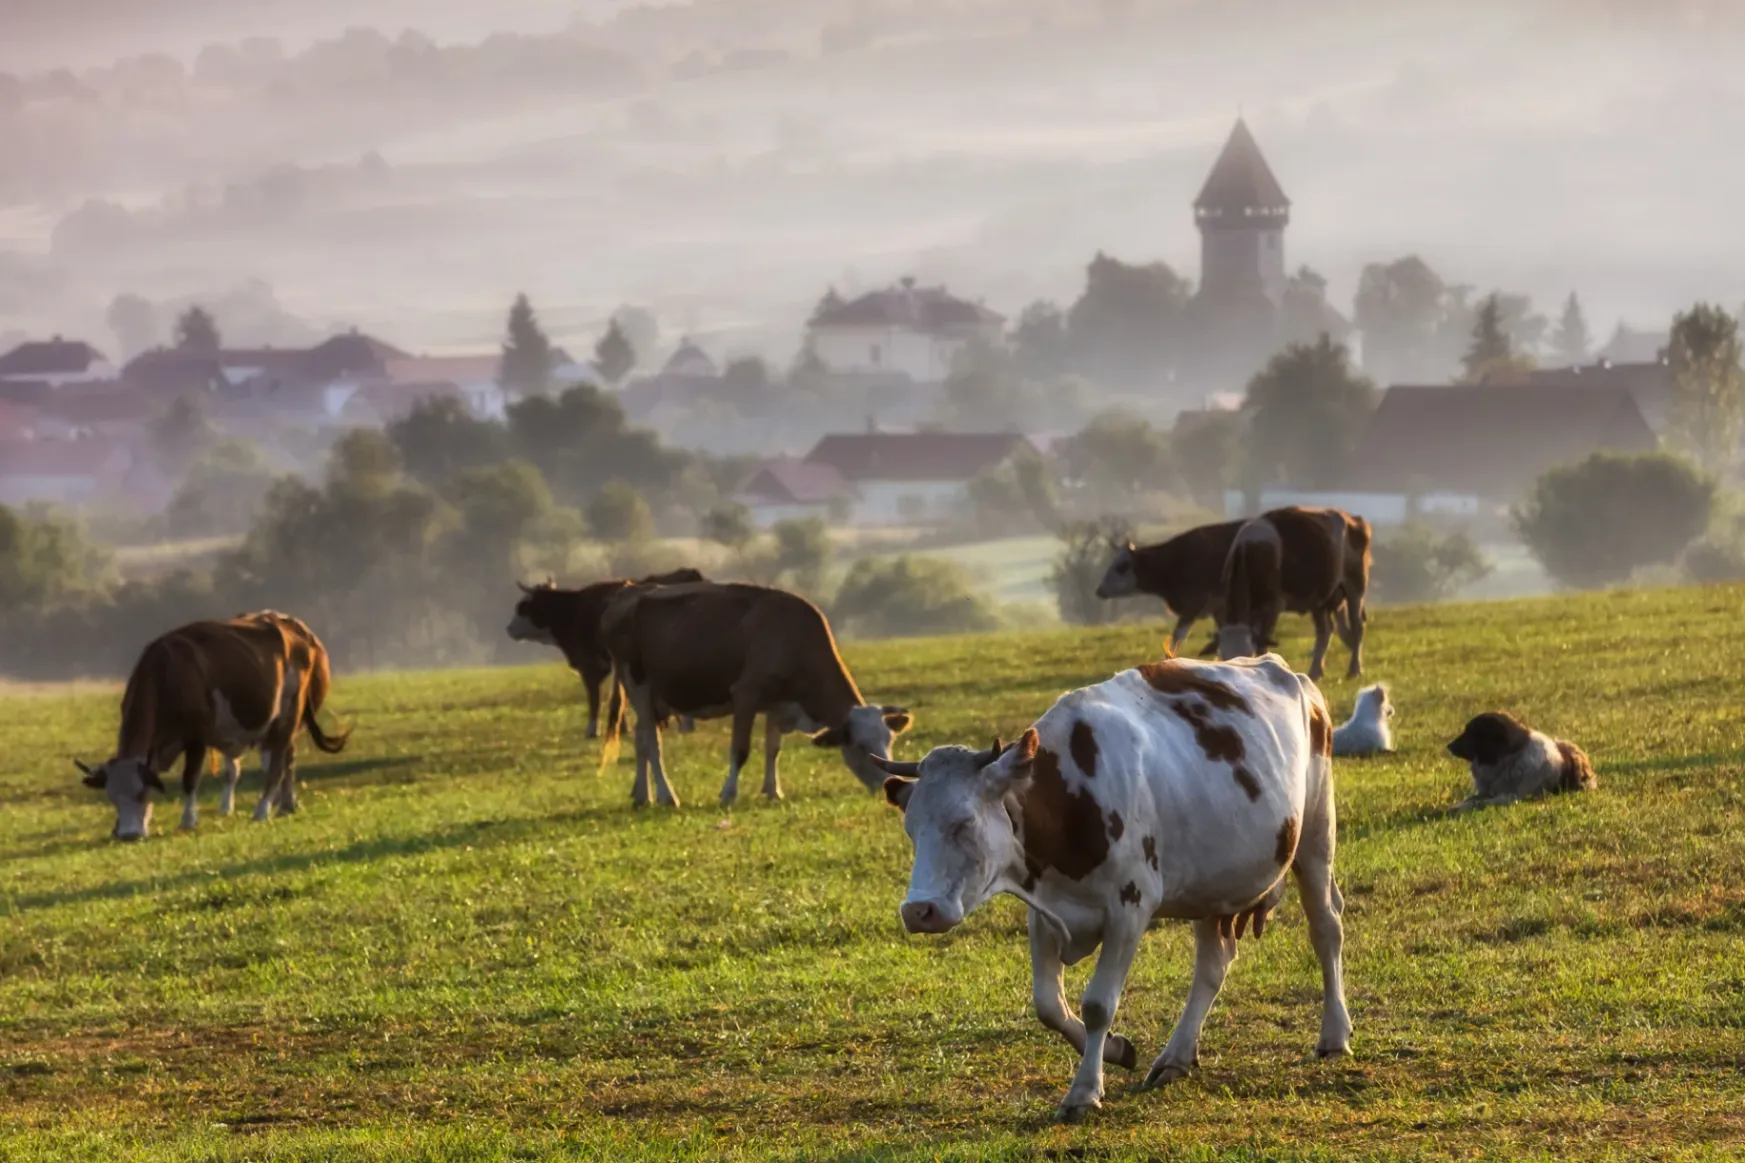 Az autentikus élményeket kínáló erdélyi dombvidék most már hivatalosan is ökoturisztikai desztinációnak számít